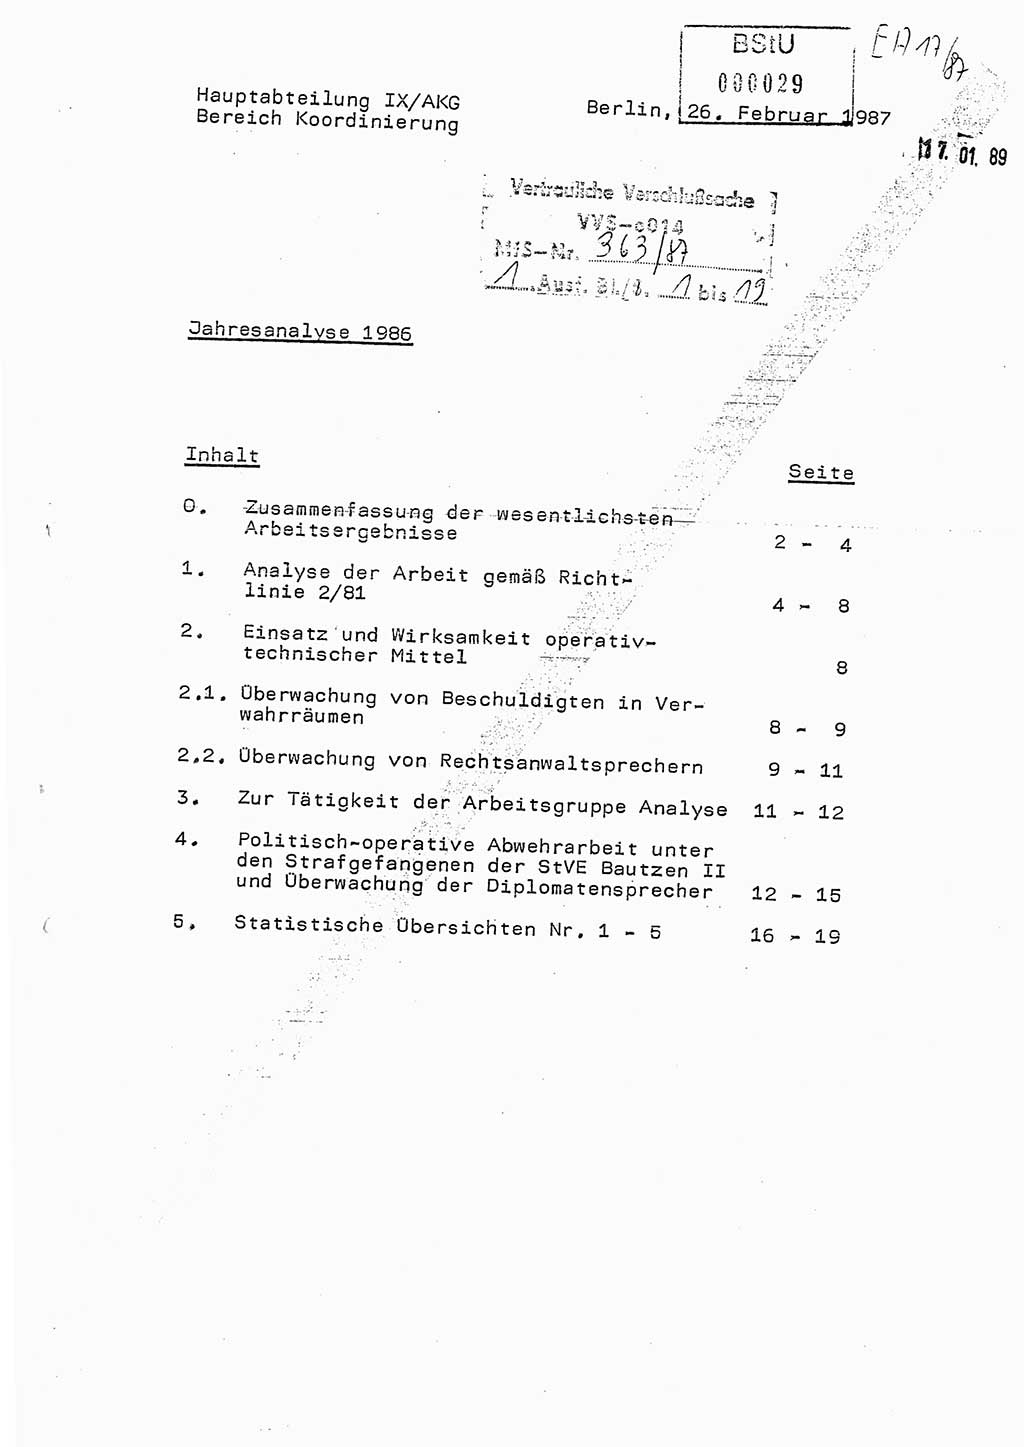 Ministerium für Staatssicherheit (MfS) [Deutsche Demokratische Republik (DDR)], Hauptabteilung (HA) Ⅸ/ Auswertungs- und Kontrollgruppe (AKG), Bereich Koordinierung, Jahresanalyse, Vertrauliche Verschlußsache (VVS) o014-363/87, Berlin 1987, Seite 1 (J.-Anal. MfS DDR HA Ⅸ/AKG VVS o014-363/87 1986, S. 1)